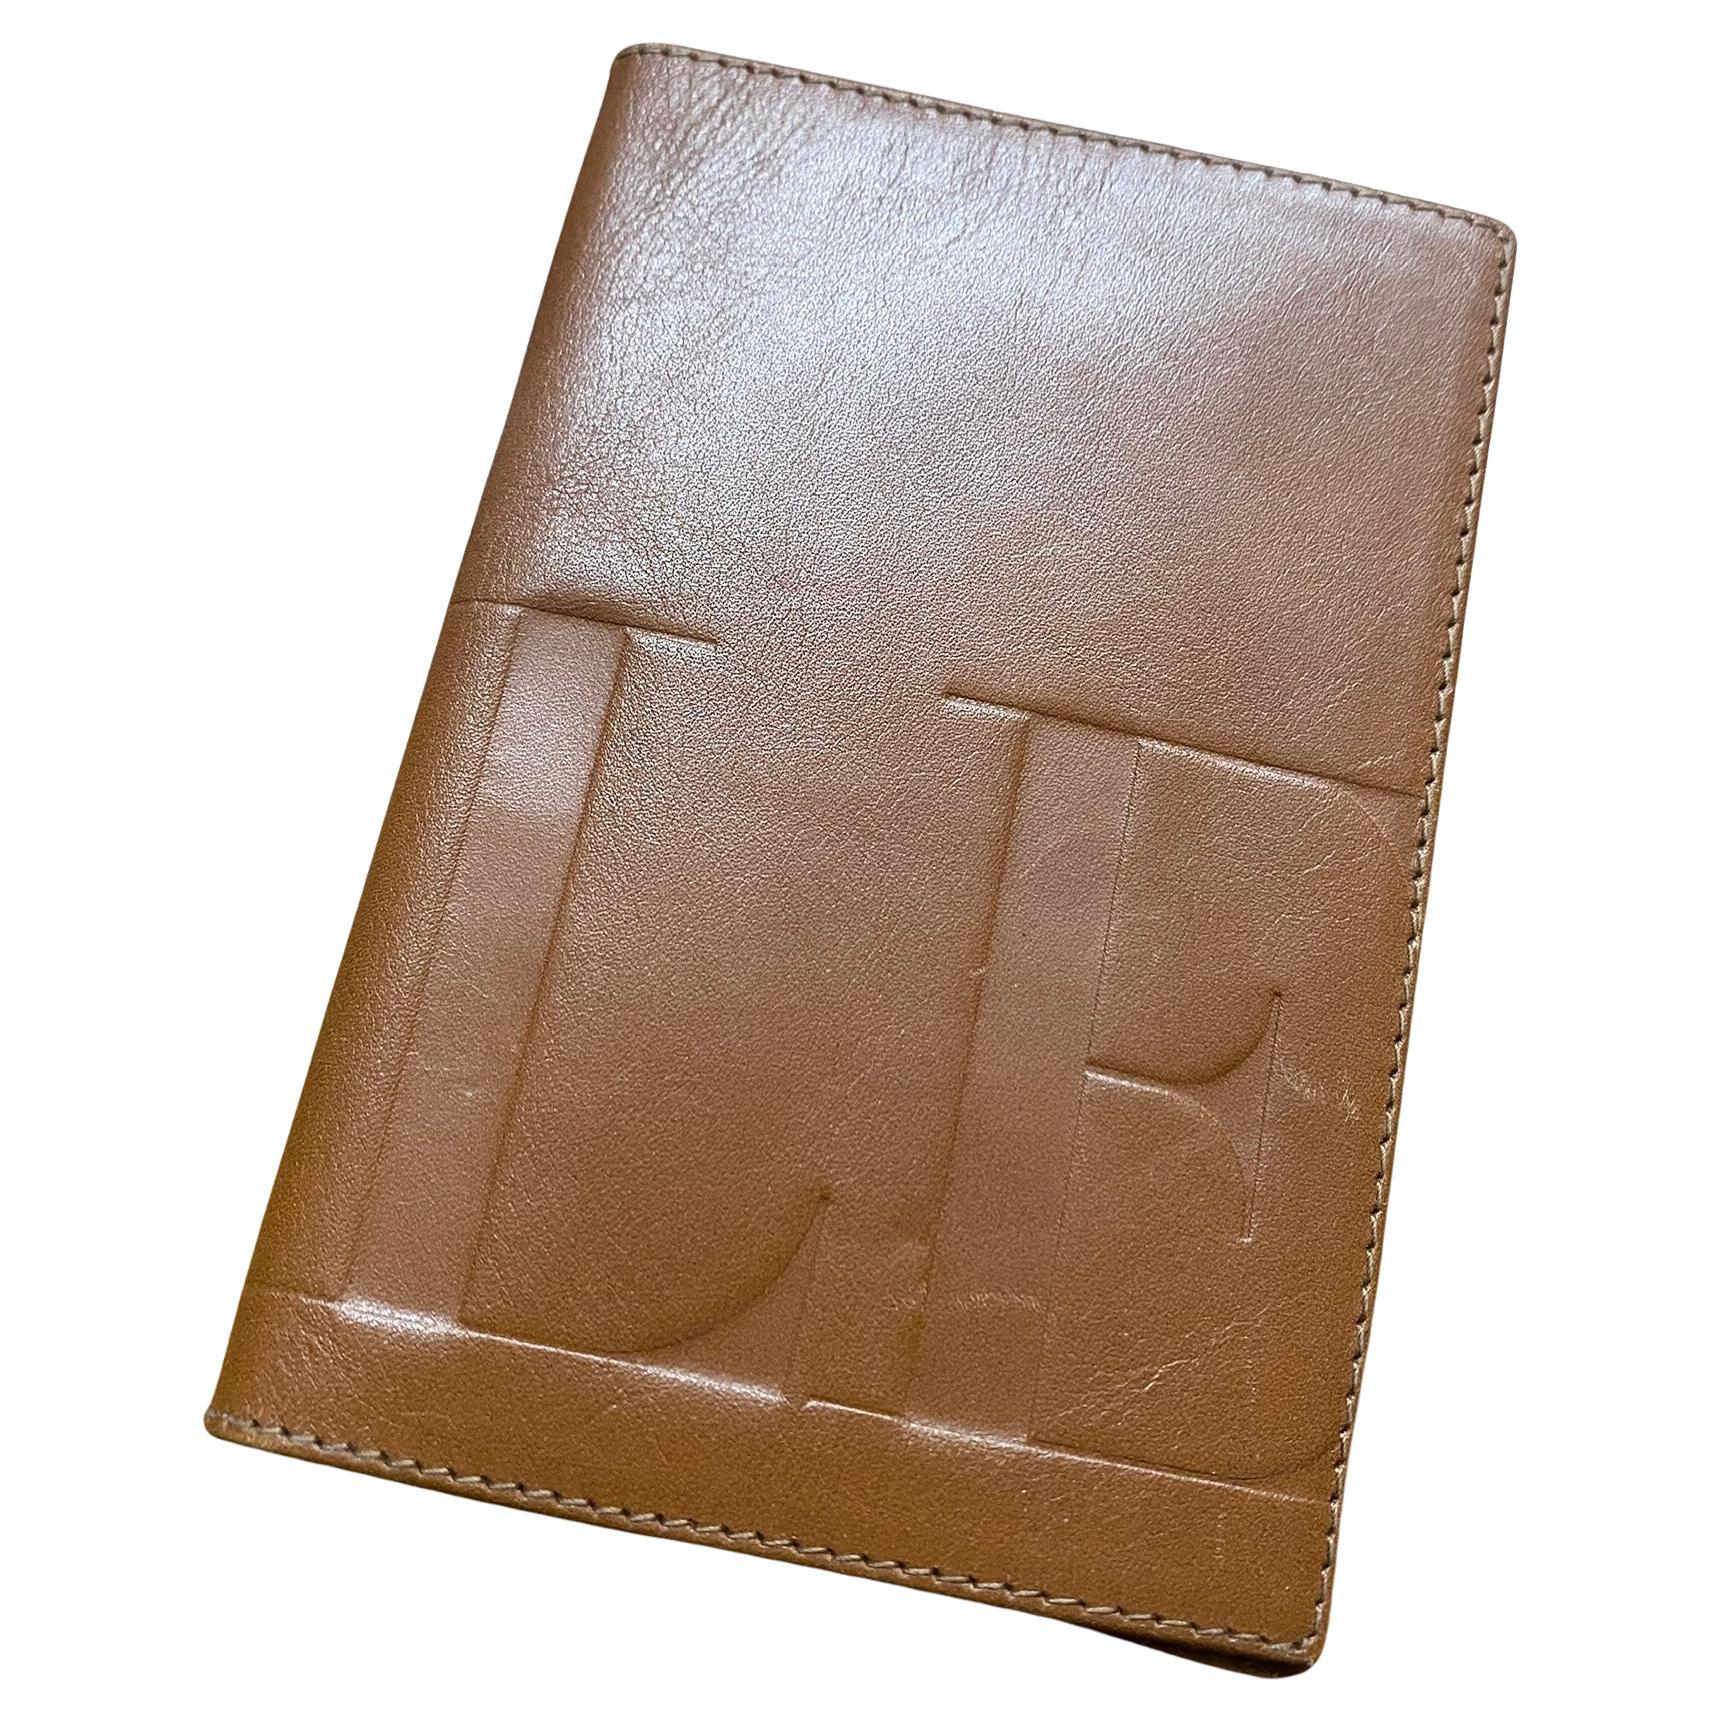 1990s Valentino Garavani Brown leather Document Holder